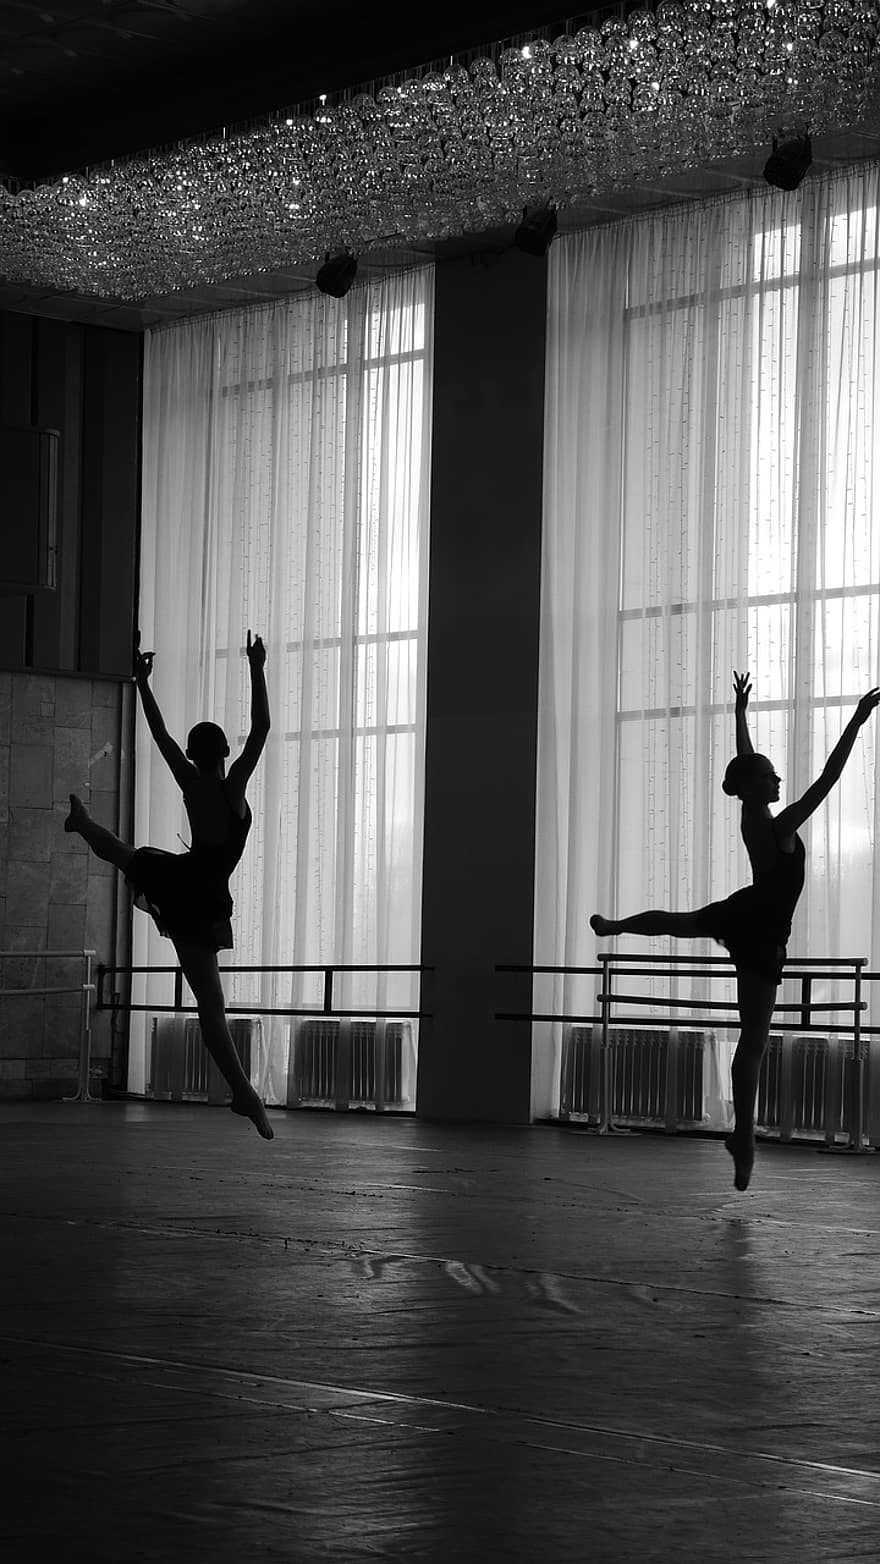 baletas, balerinai, šokiai, šokėjai, baleto studija, jauna moteris, baleto šokėjai, baleto sokejas, šokėja, atlikėjas, spektaklis